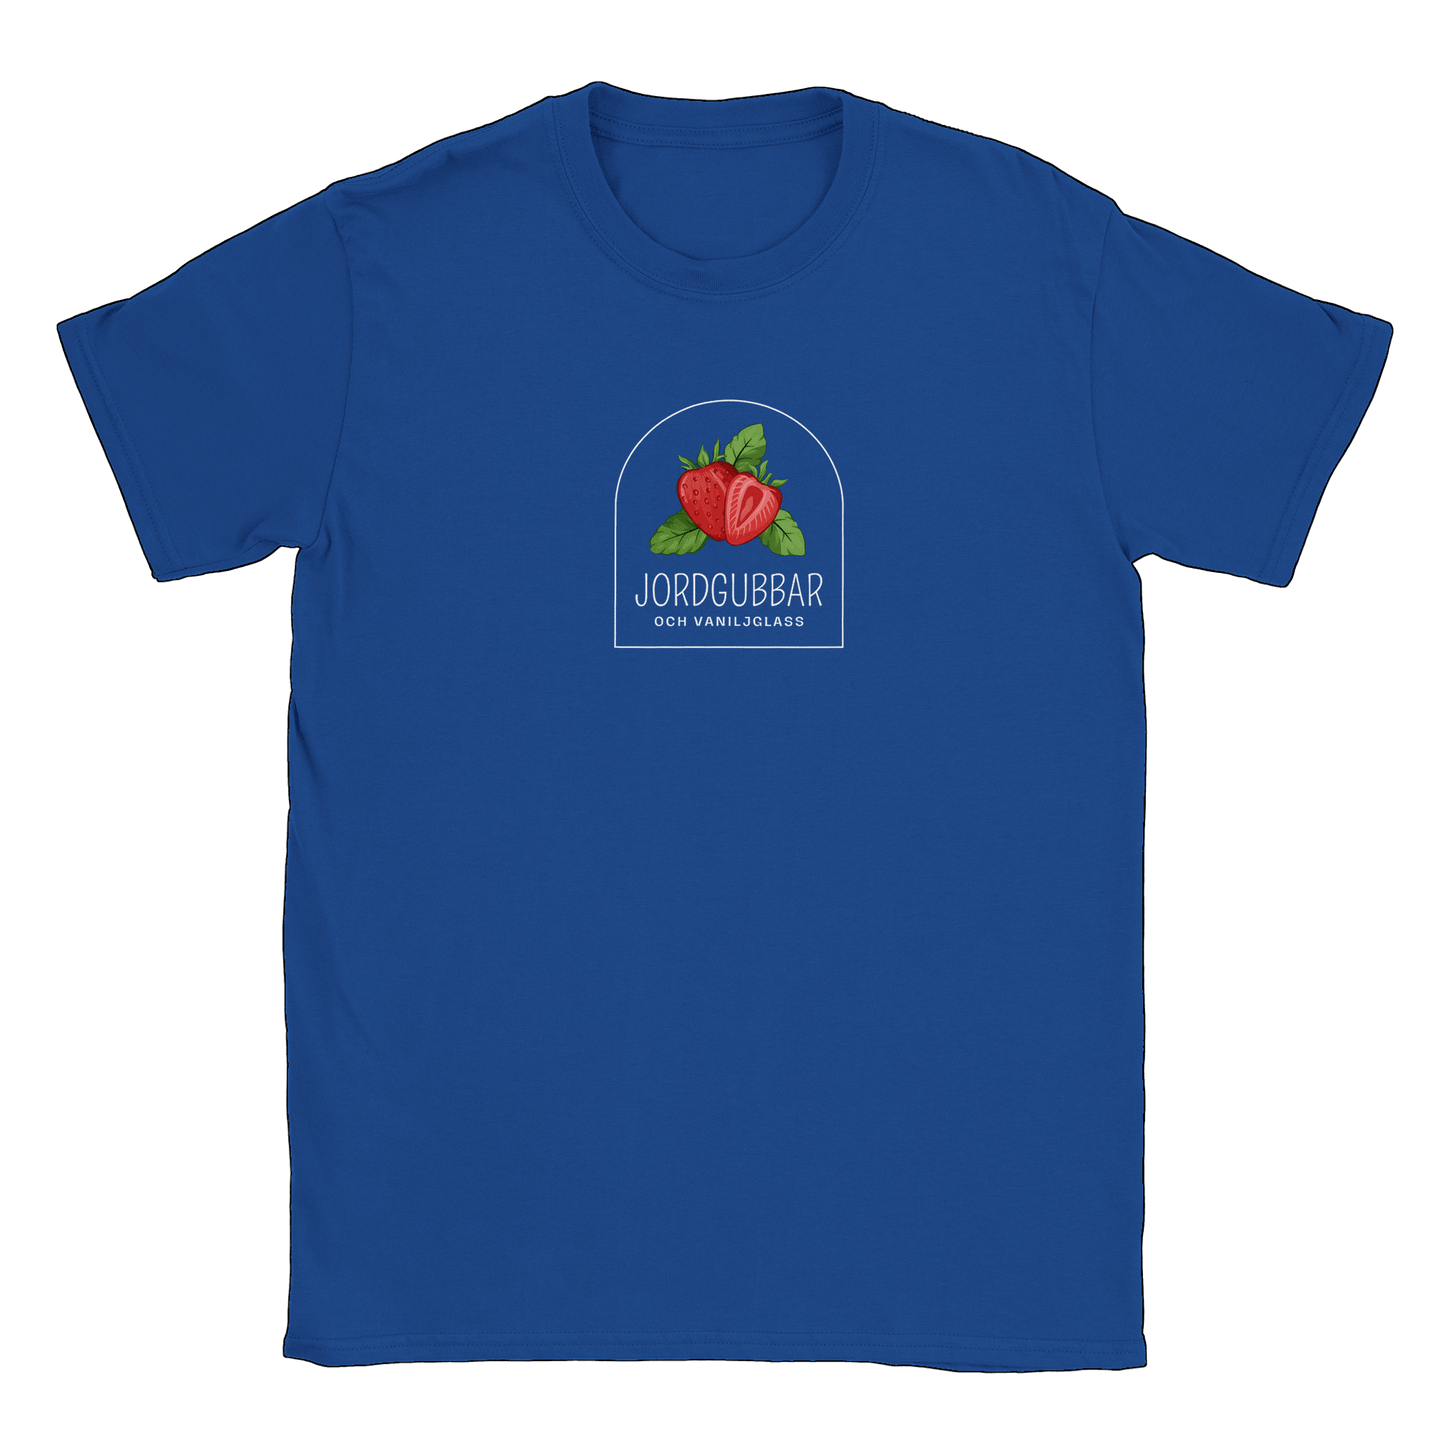 Jordgubbar och vaniljglass - T-shirt Royal